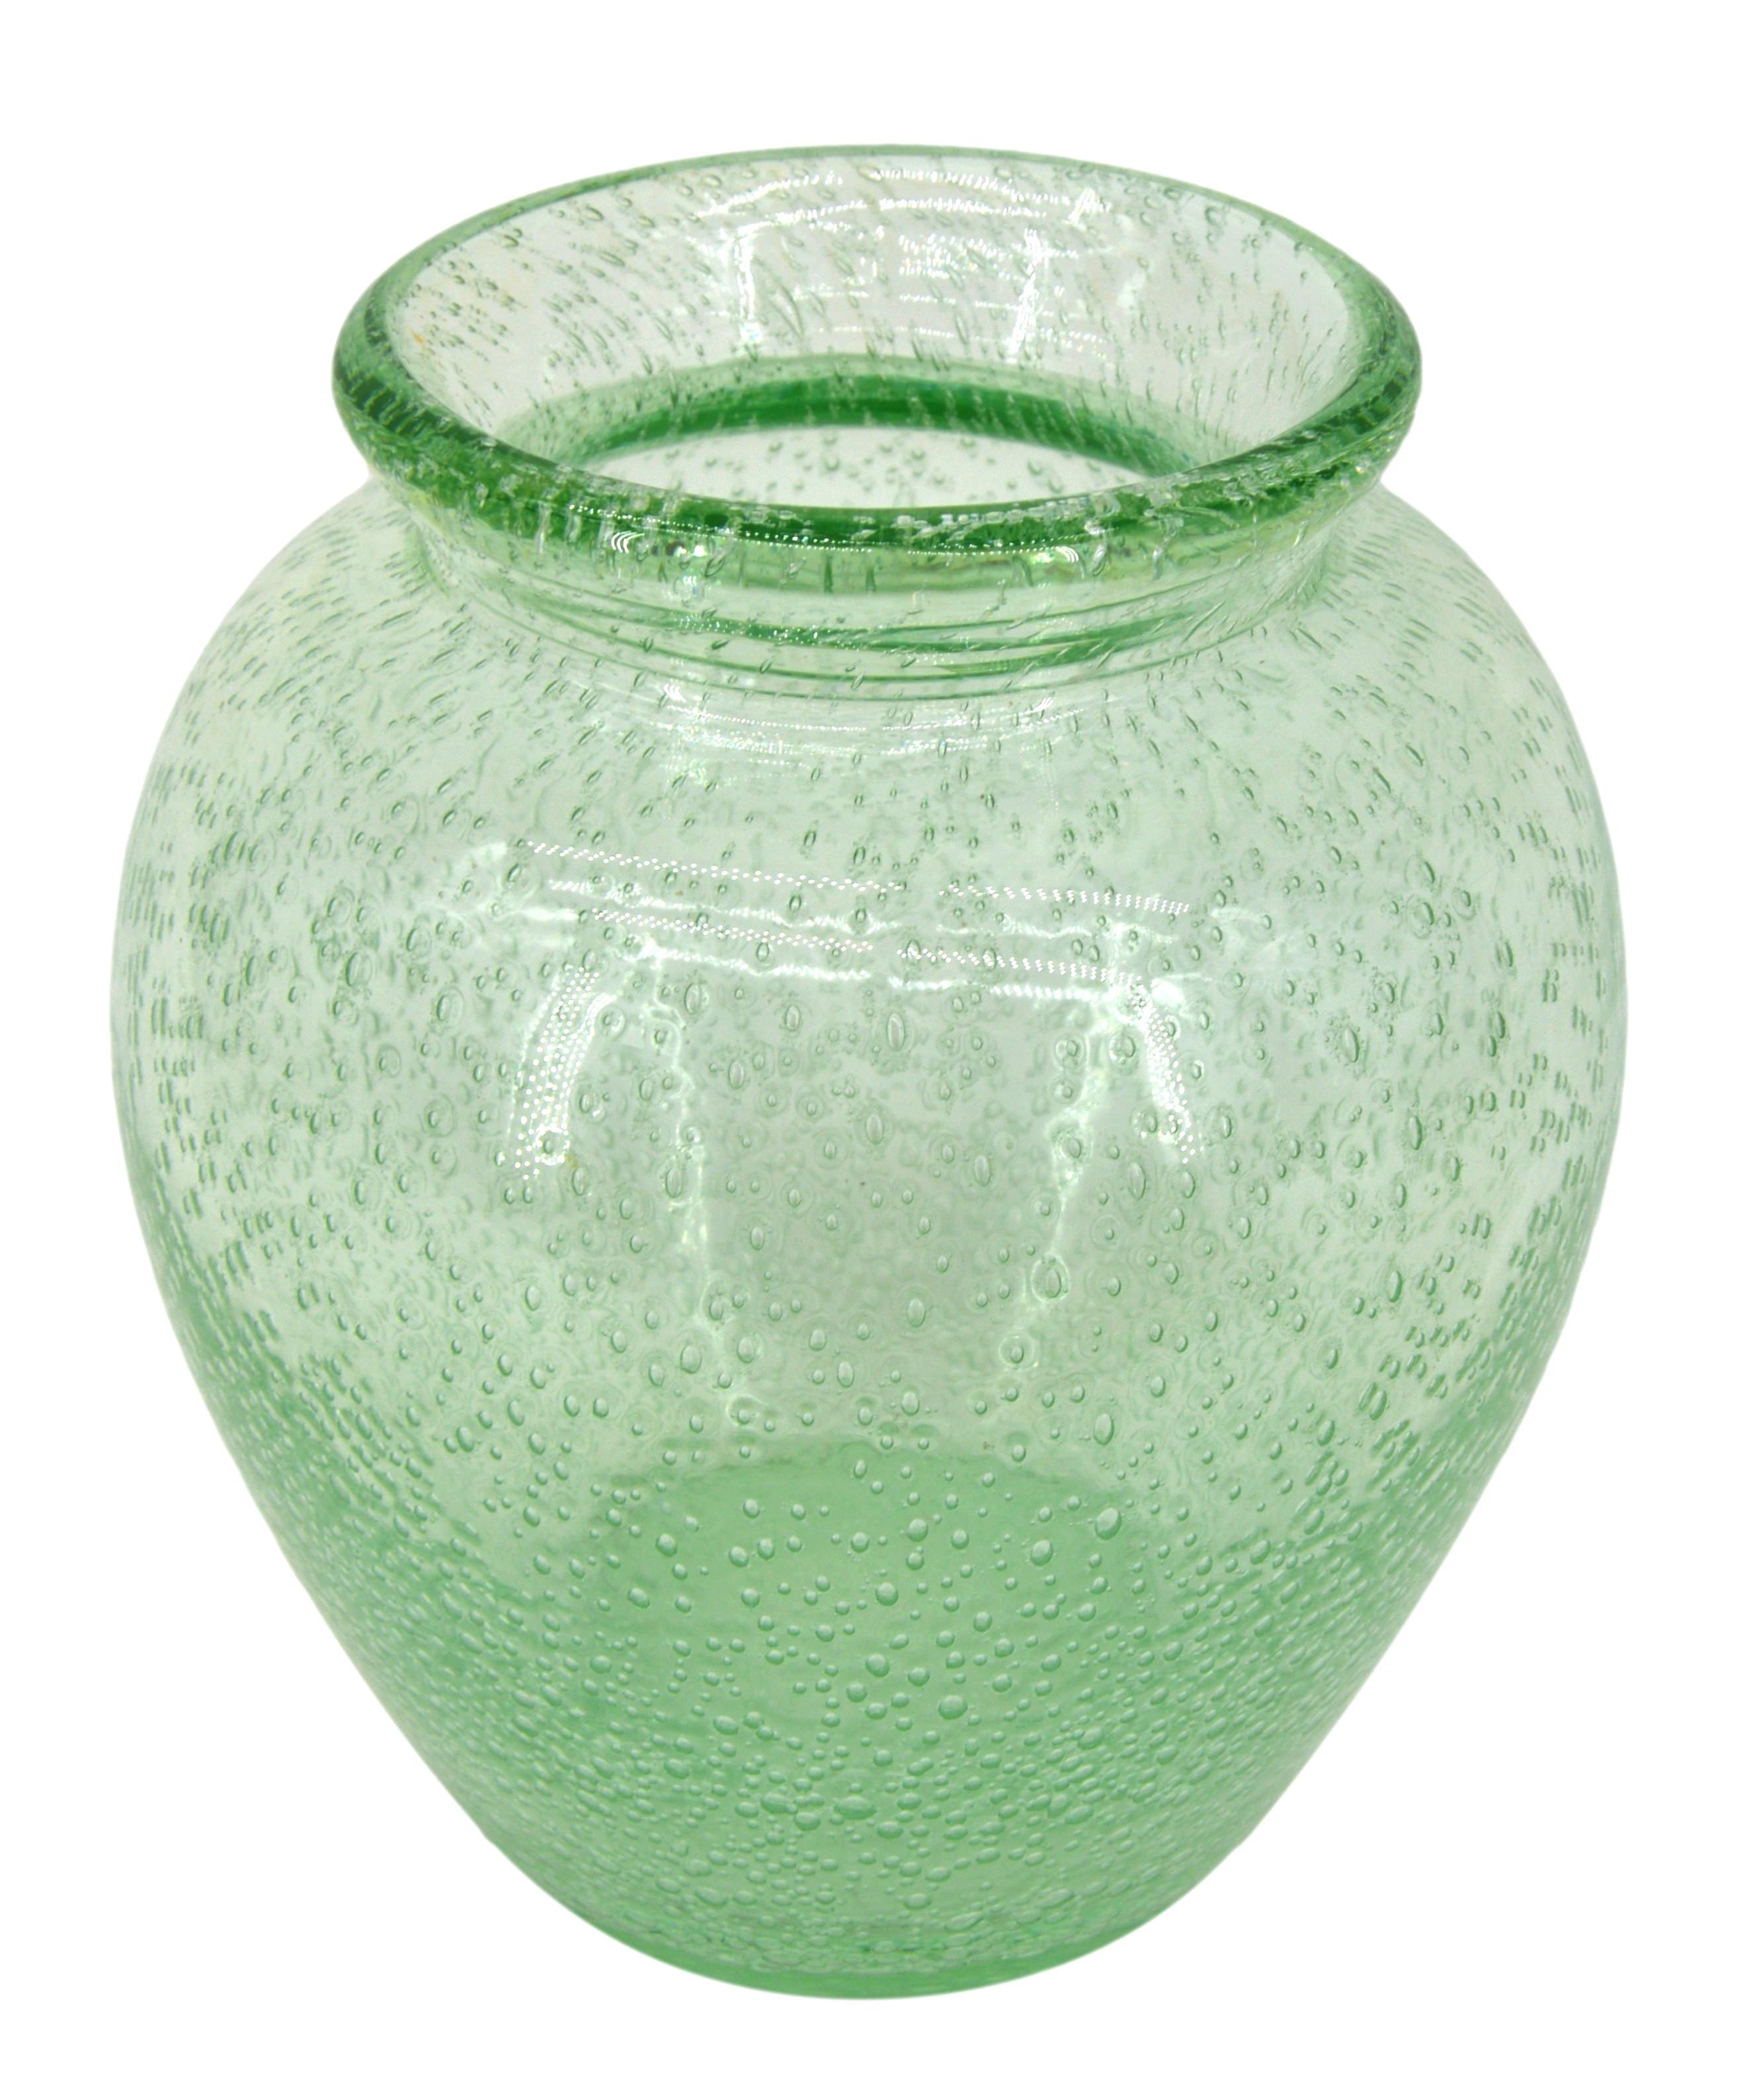 Vase en verre Art déco de Daum (Nancy), France, années 1930. Vase en verre épais soufflé et bullé. Couleur : vert. Hauteur : 19,5 cm, diamètre : 18 cm. Signé 